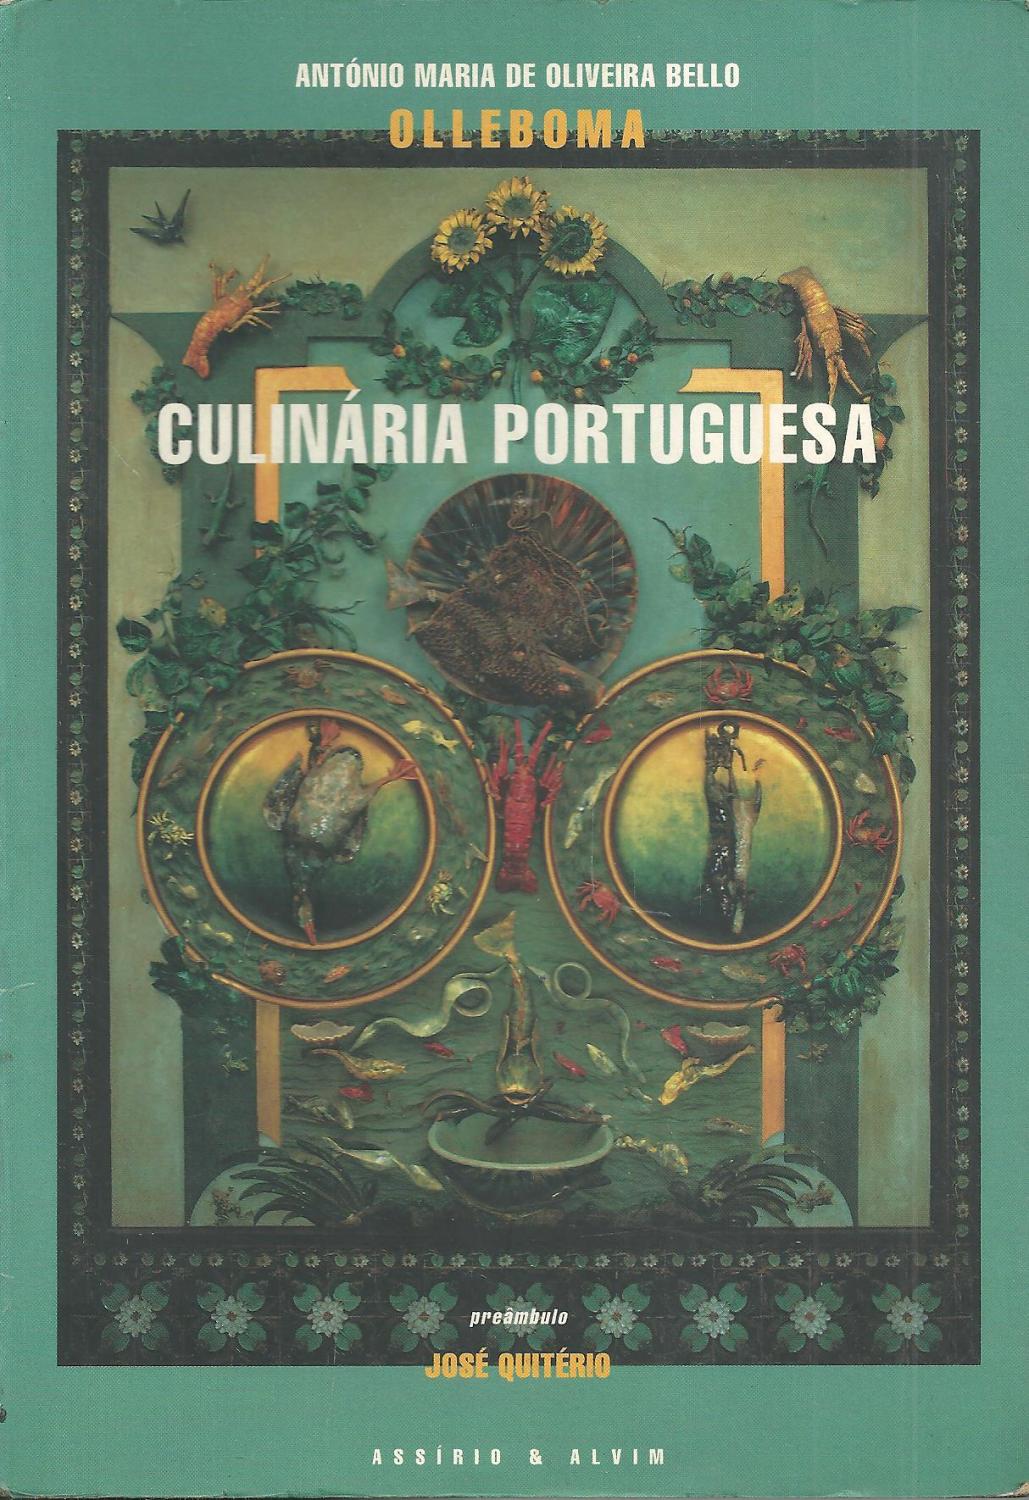 Culinaria portuguesa (Coracao, cabeca e estomago) (Portuguese Edition)